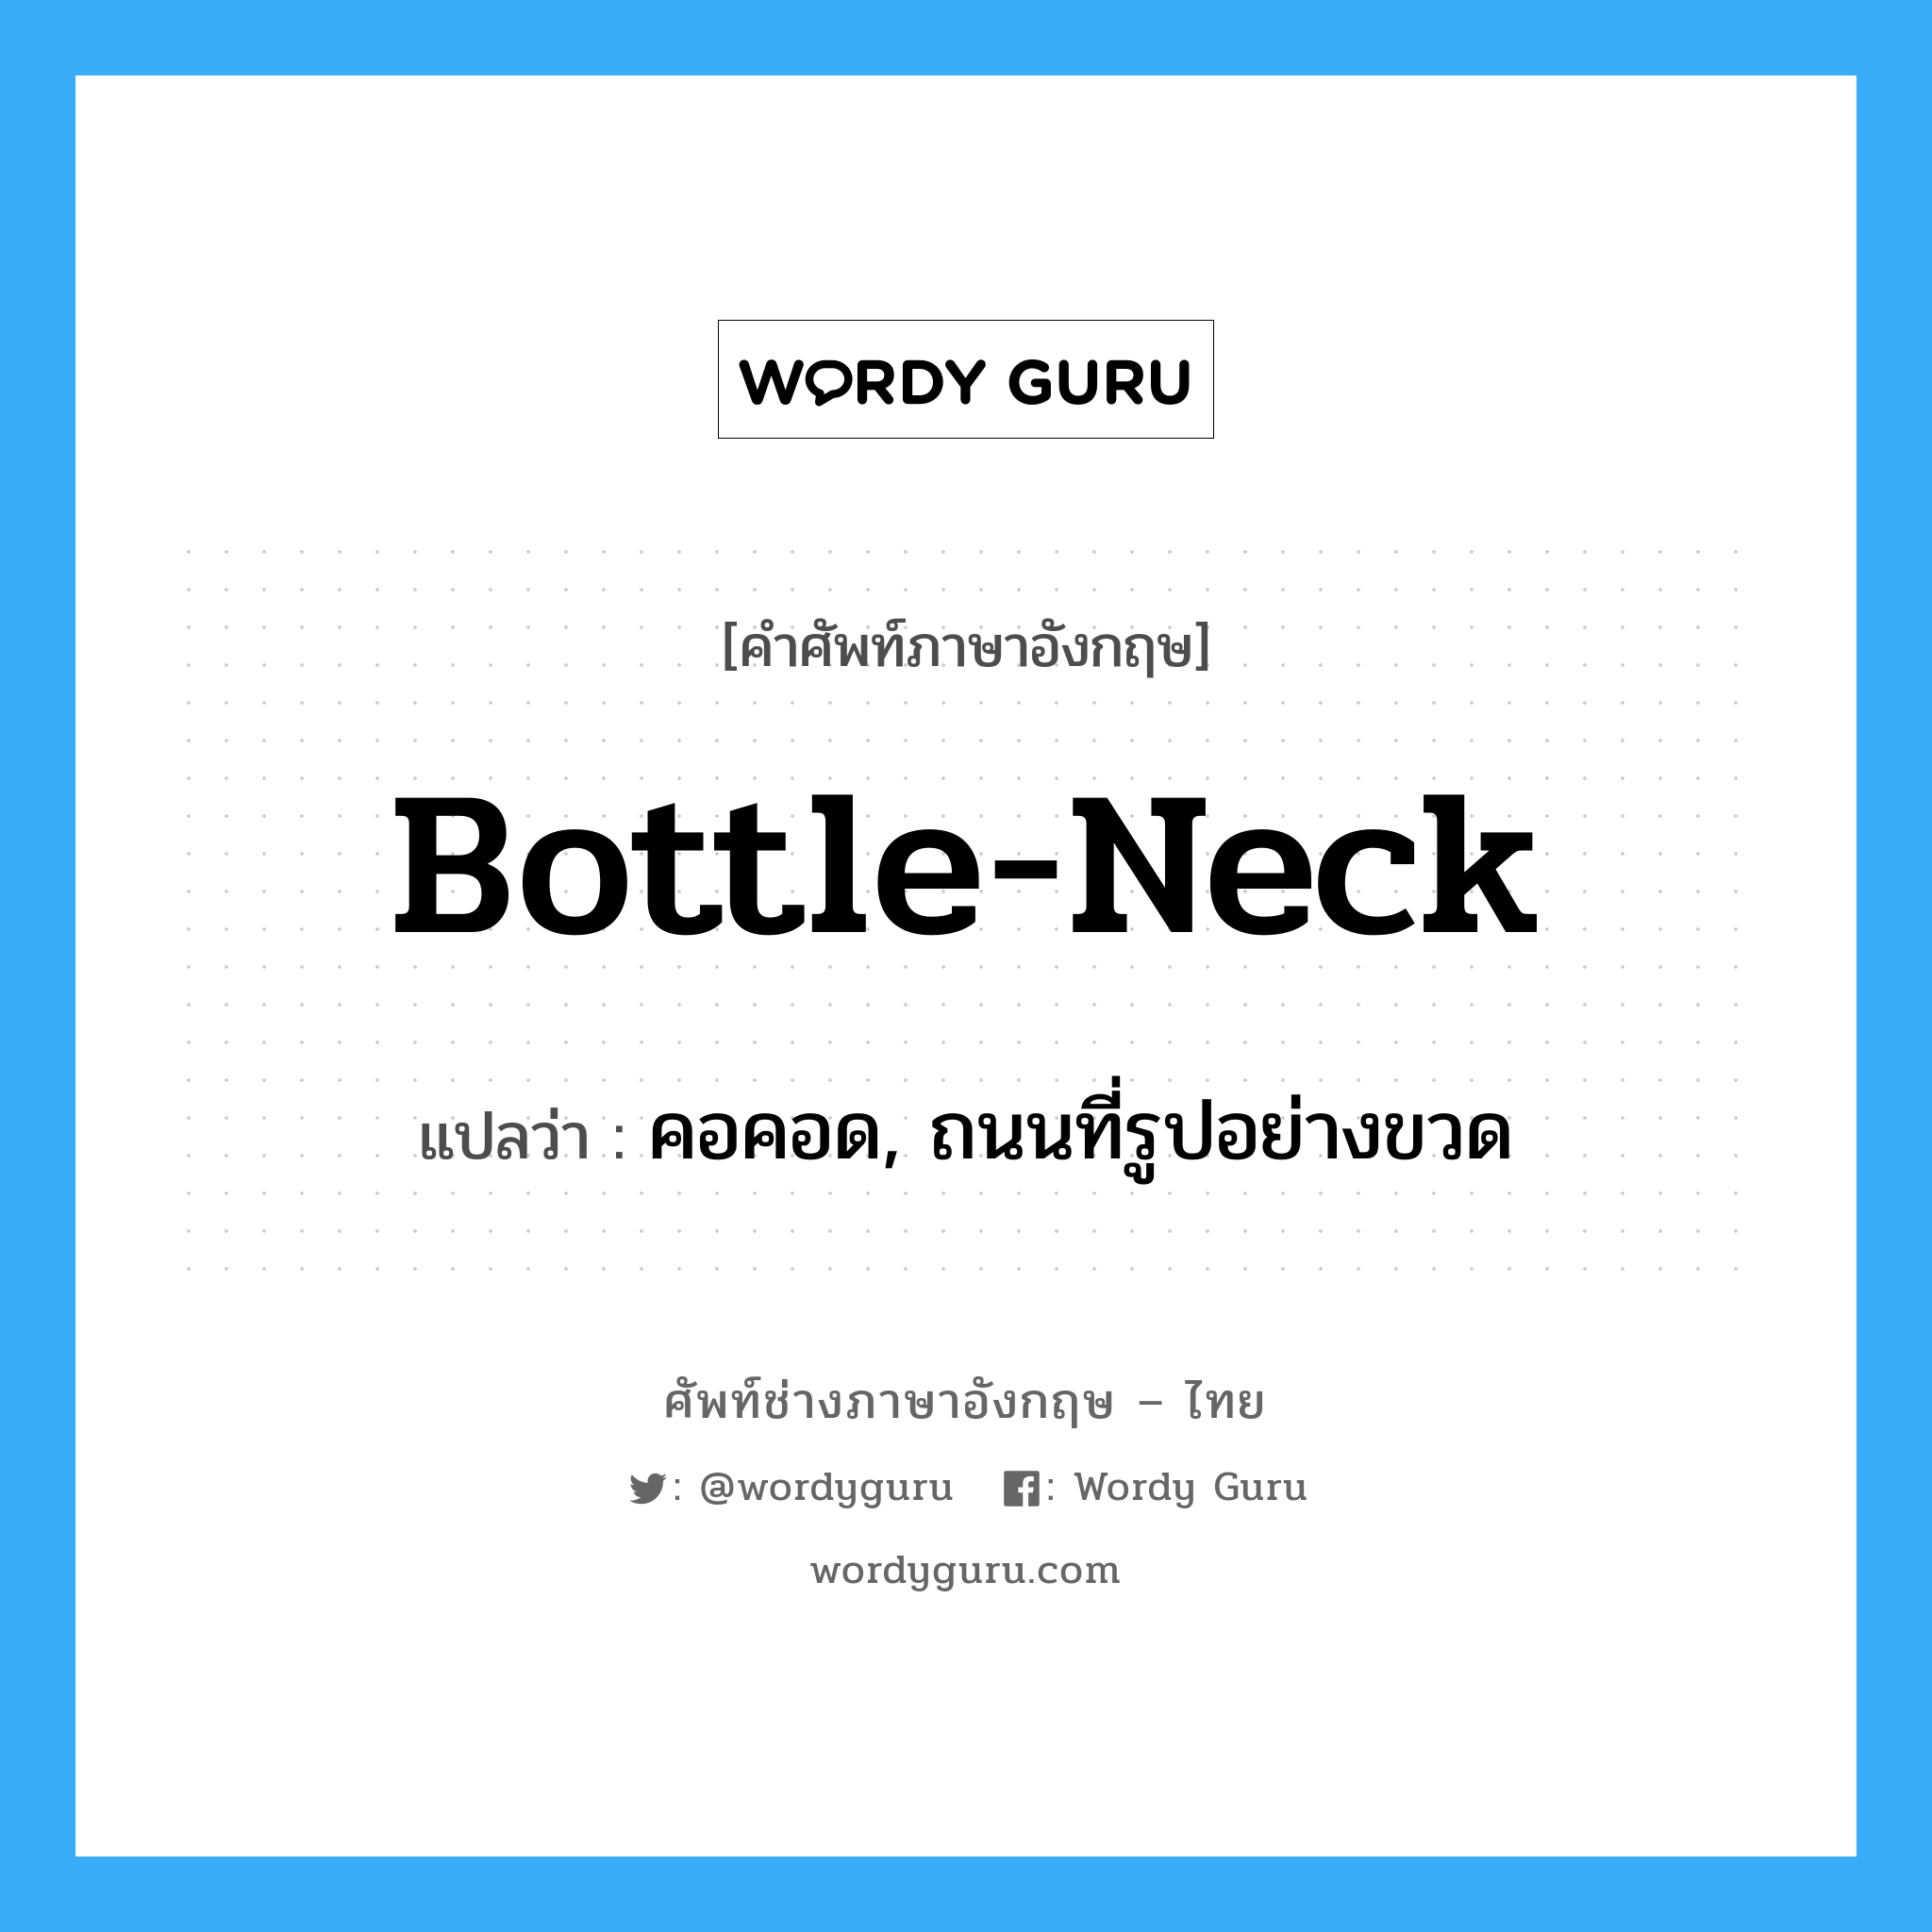 bottle-neck แปลว่า?, คำศัพท์ช่างภาษาอังกฤษ - ไทย bottle-neck คำศัพท์ภาษาอังกฤษ bottle-neck แปลว่า คอคอด, ถนนที่รูปอย่างขวด